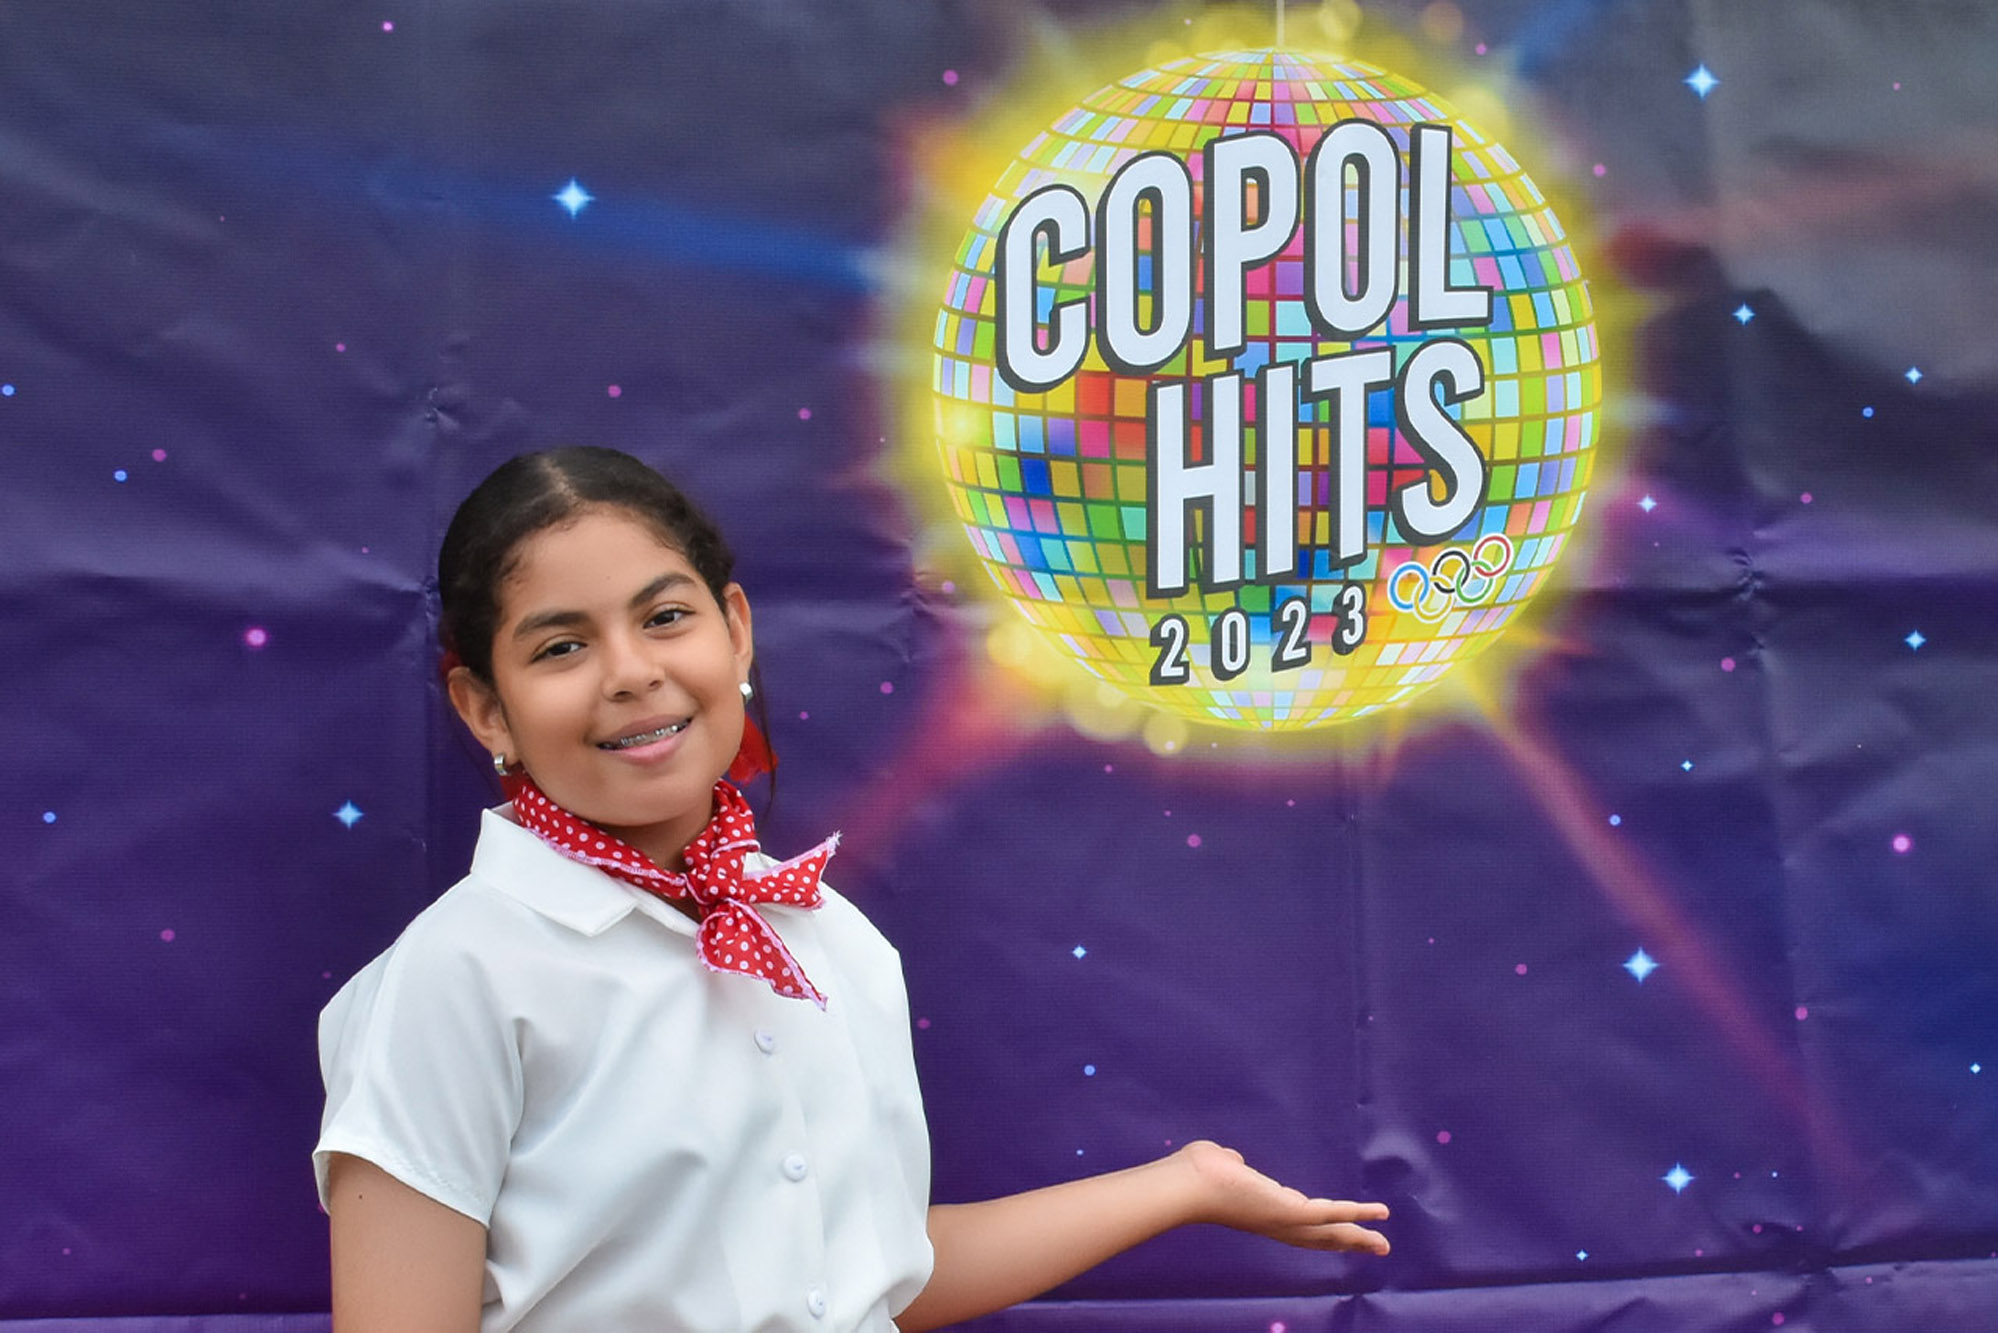 Se revivió música retro en Copol Hits 2023 